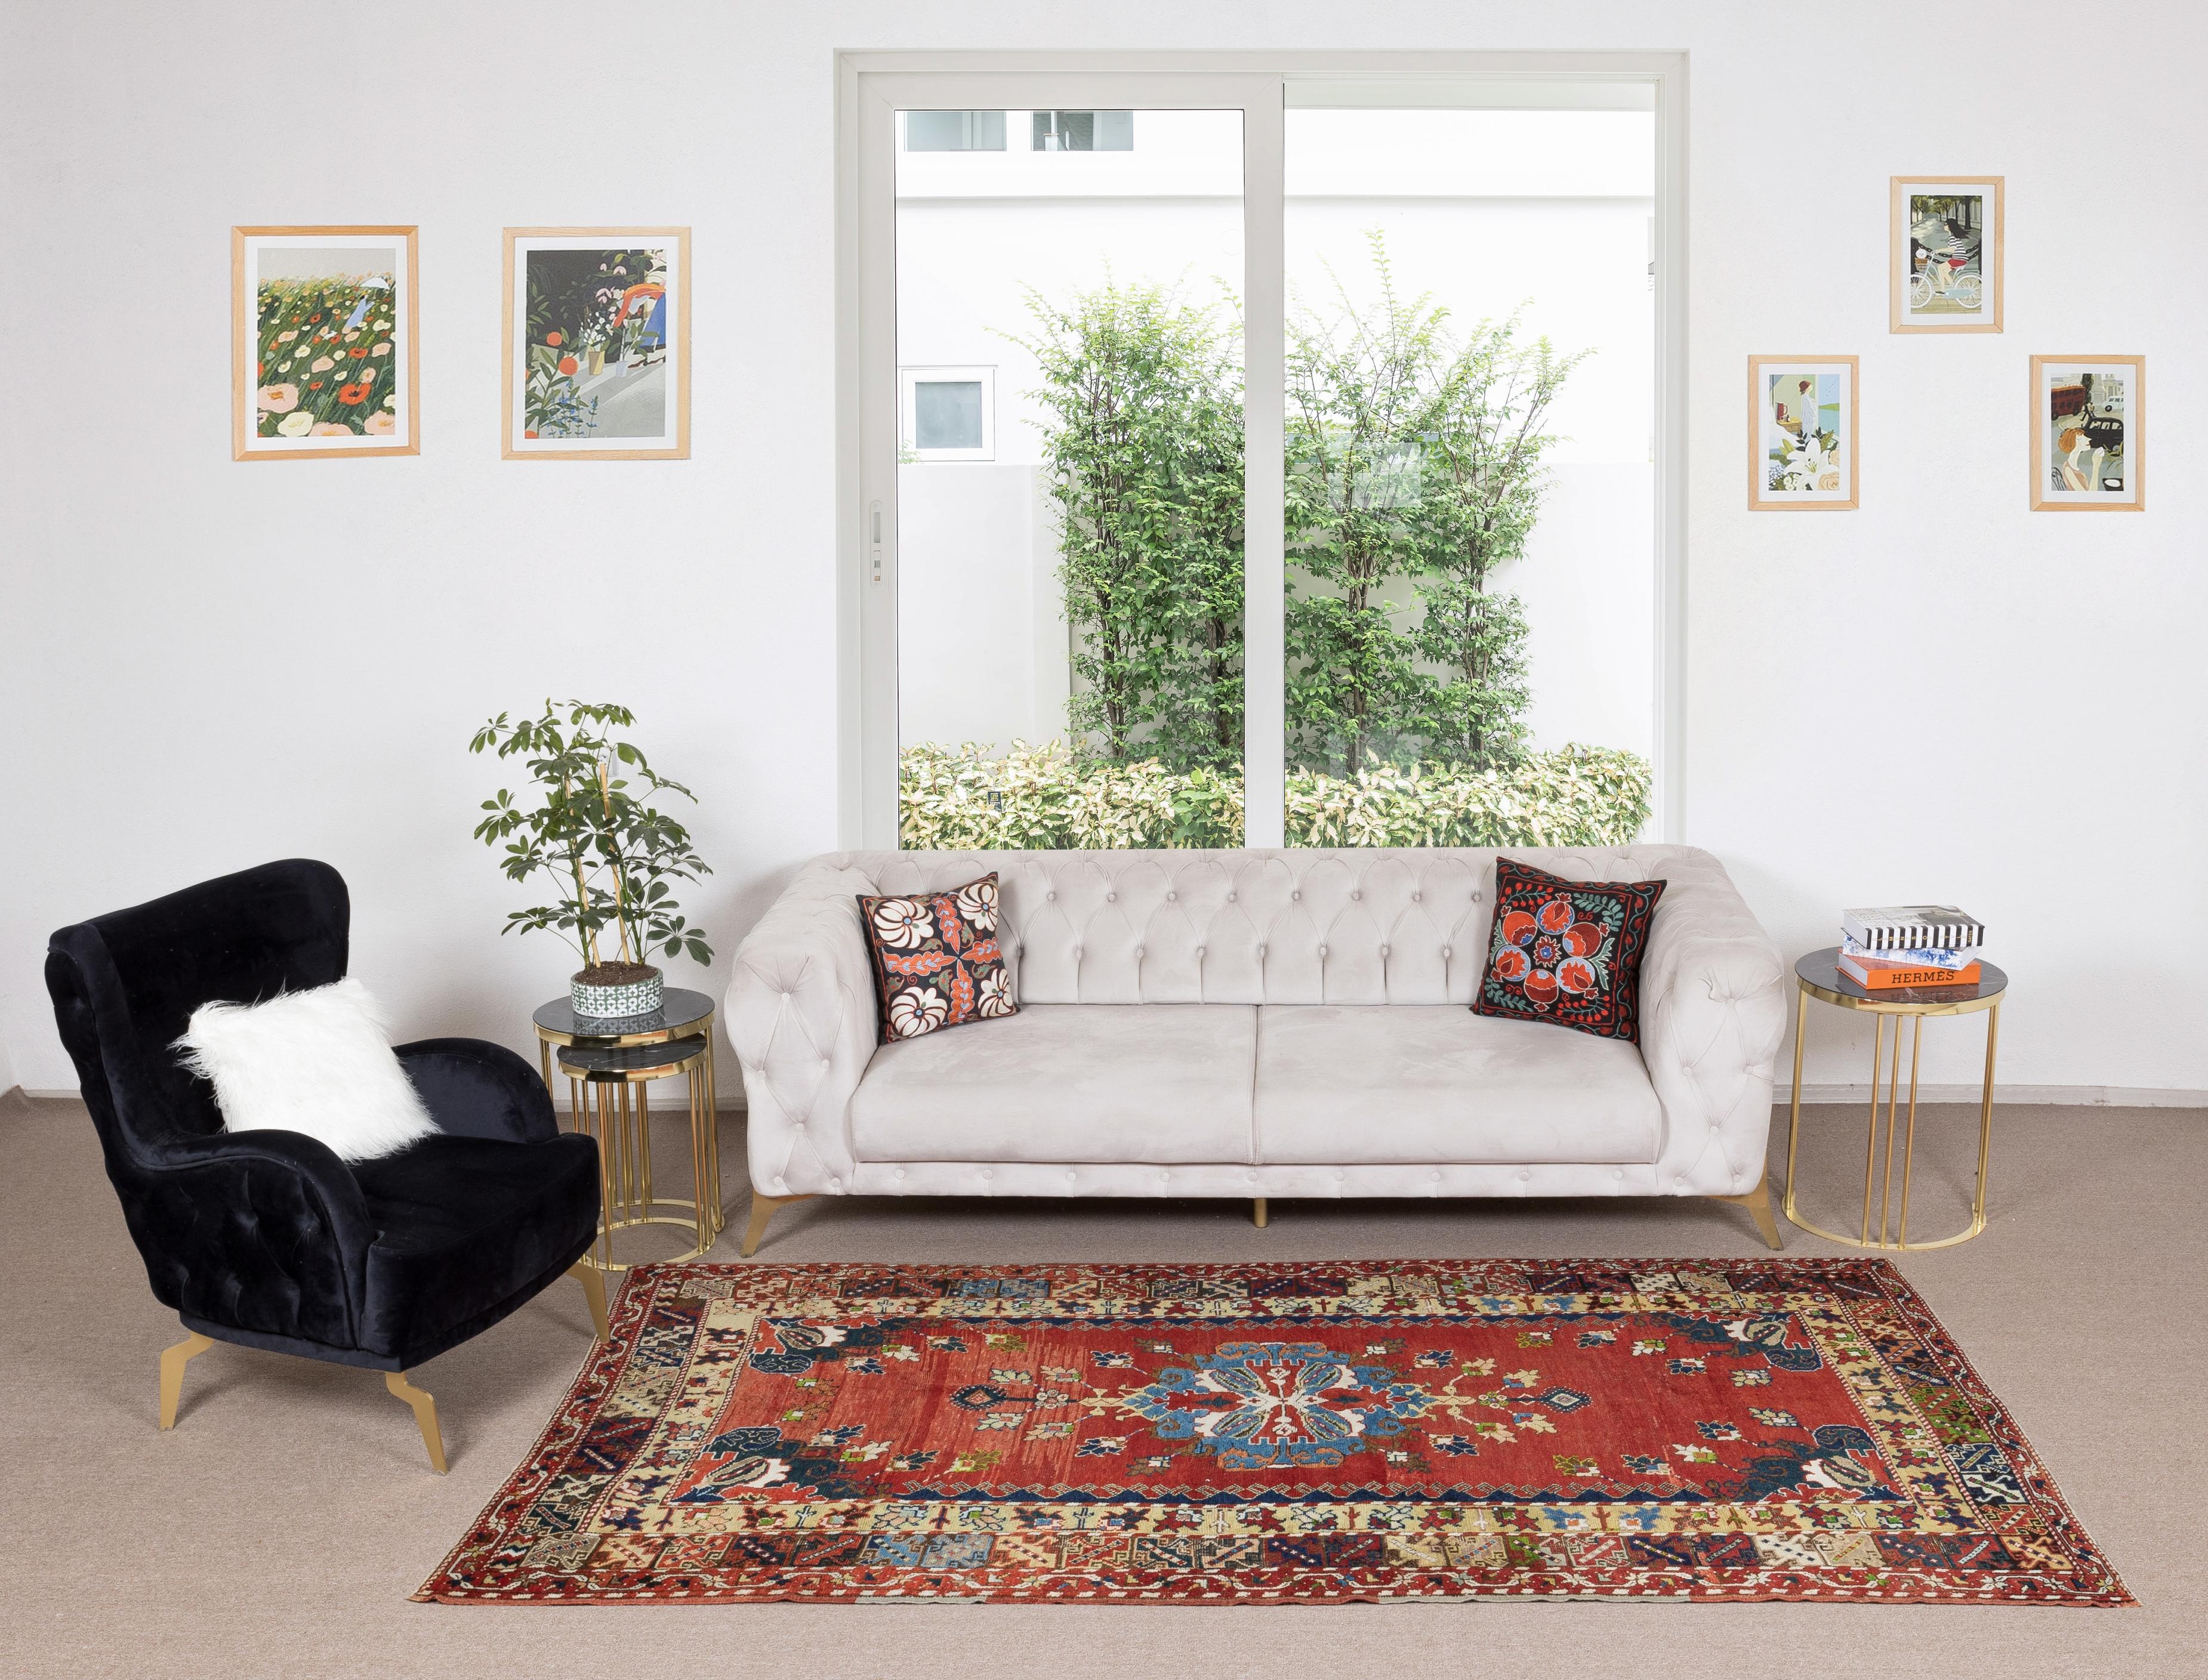 Ein feiner handgeknüpfter türkischer Teppich aus den 1960er Jahren. Der Teppich ist aus mittelhohem Wollflor auf Wollunterlage gefertigt. Es ist schwer und liegt flach auf dem Boden, in sehr gutem Zustand ohne Probleme. Er wurde professionell